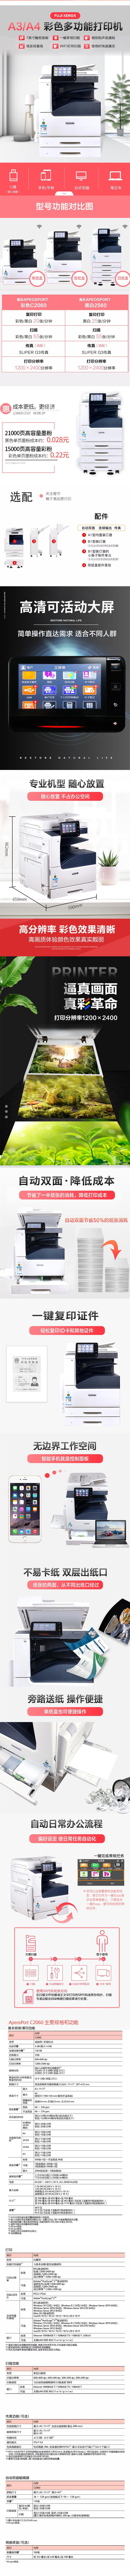 富士胶片 ApeosPort C2060 CPS 彩色激光复合复印机(图1)